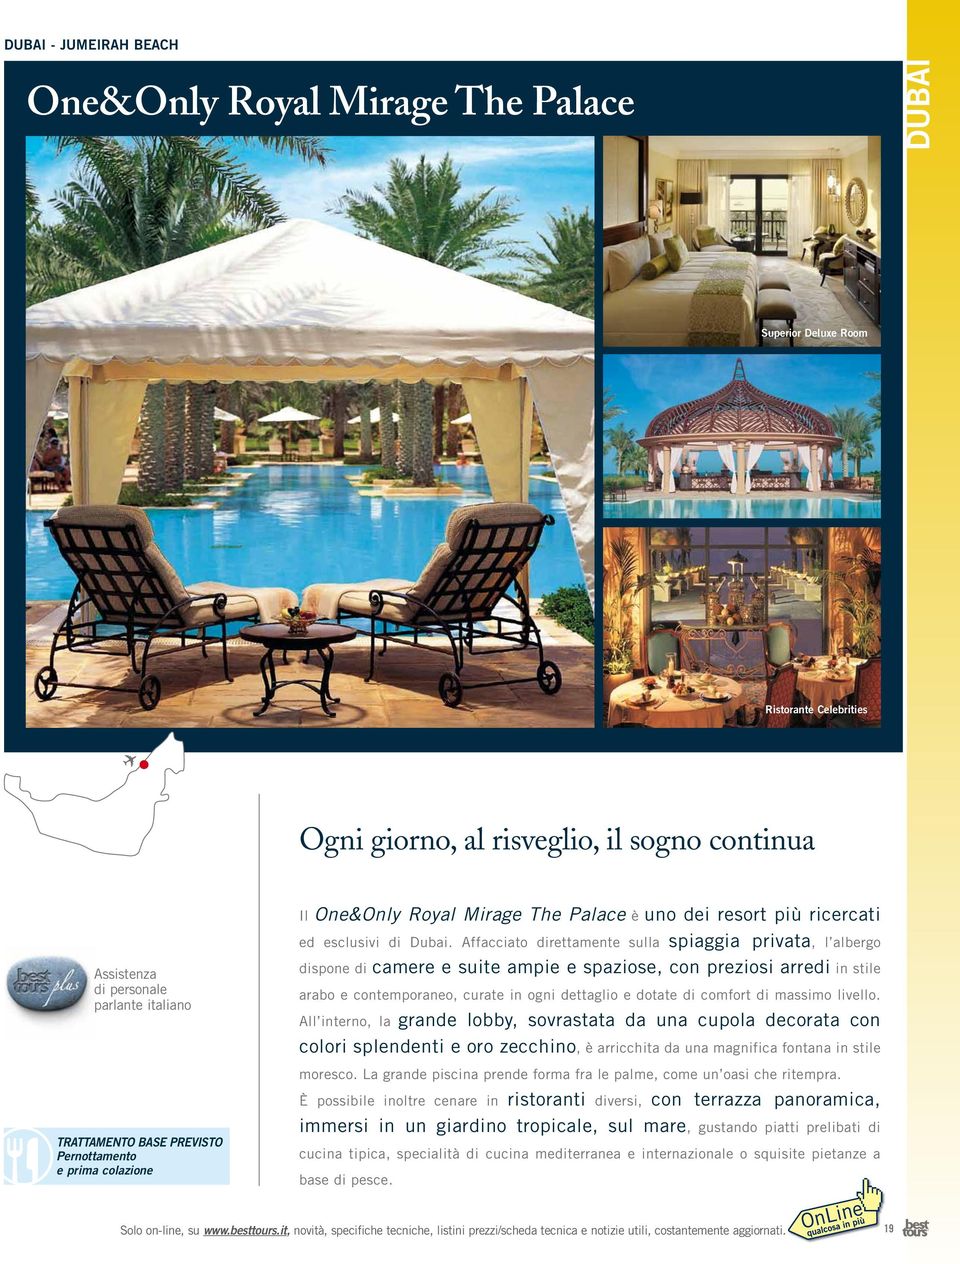 Affacciato direttamente sulla spiaggia privata, l albergo dispone di camere e suite ampie e spaziose, con preziosi arredi in stile arabo e contemporaneo, curate in ogni dettaglio e dotate di comfort